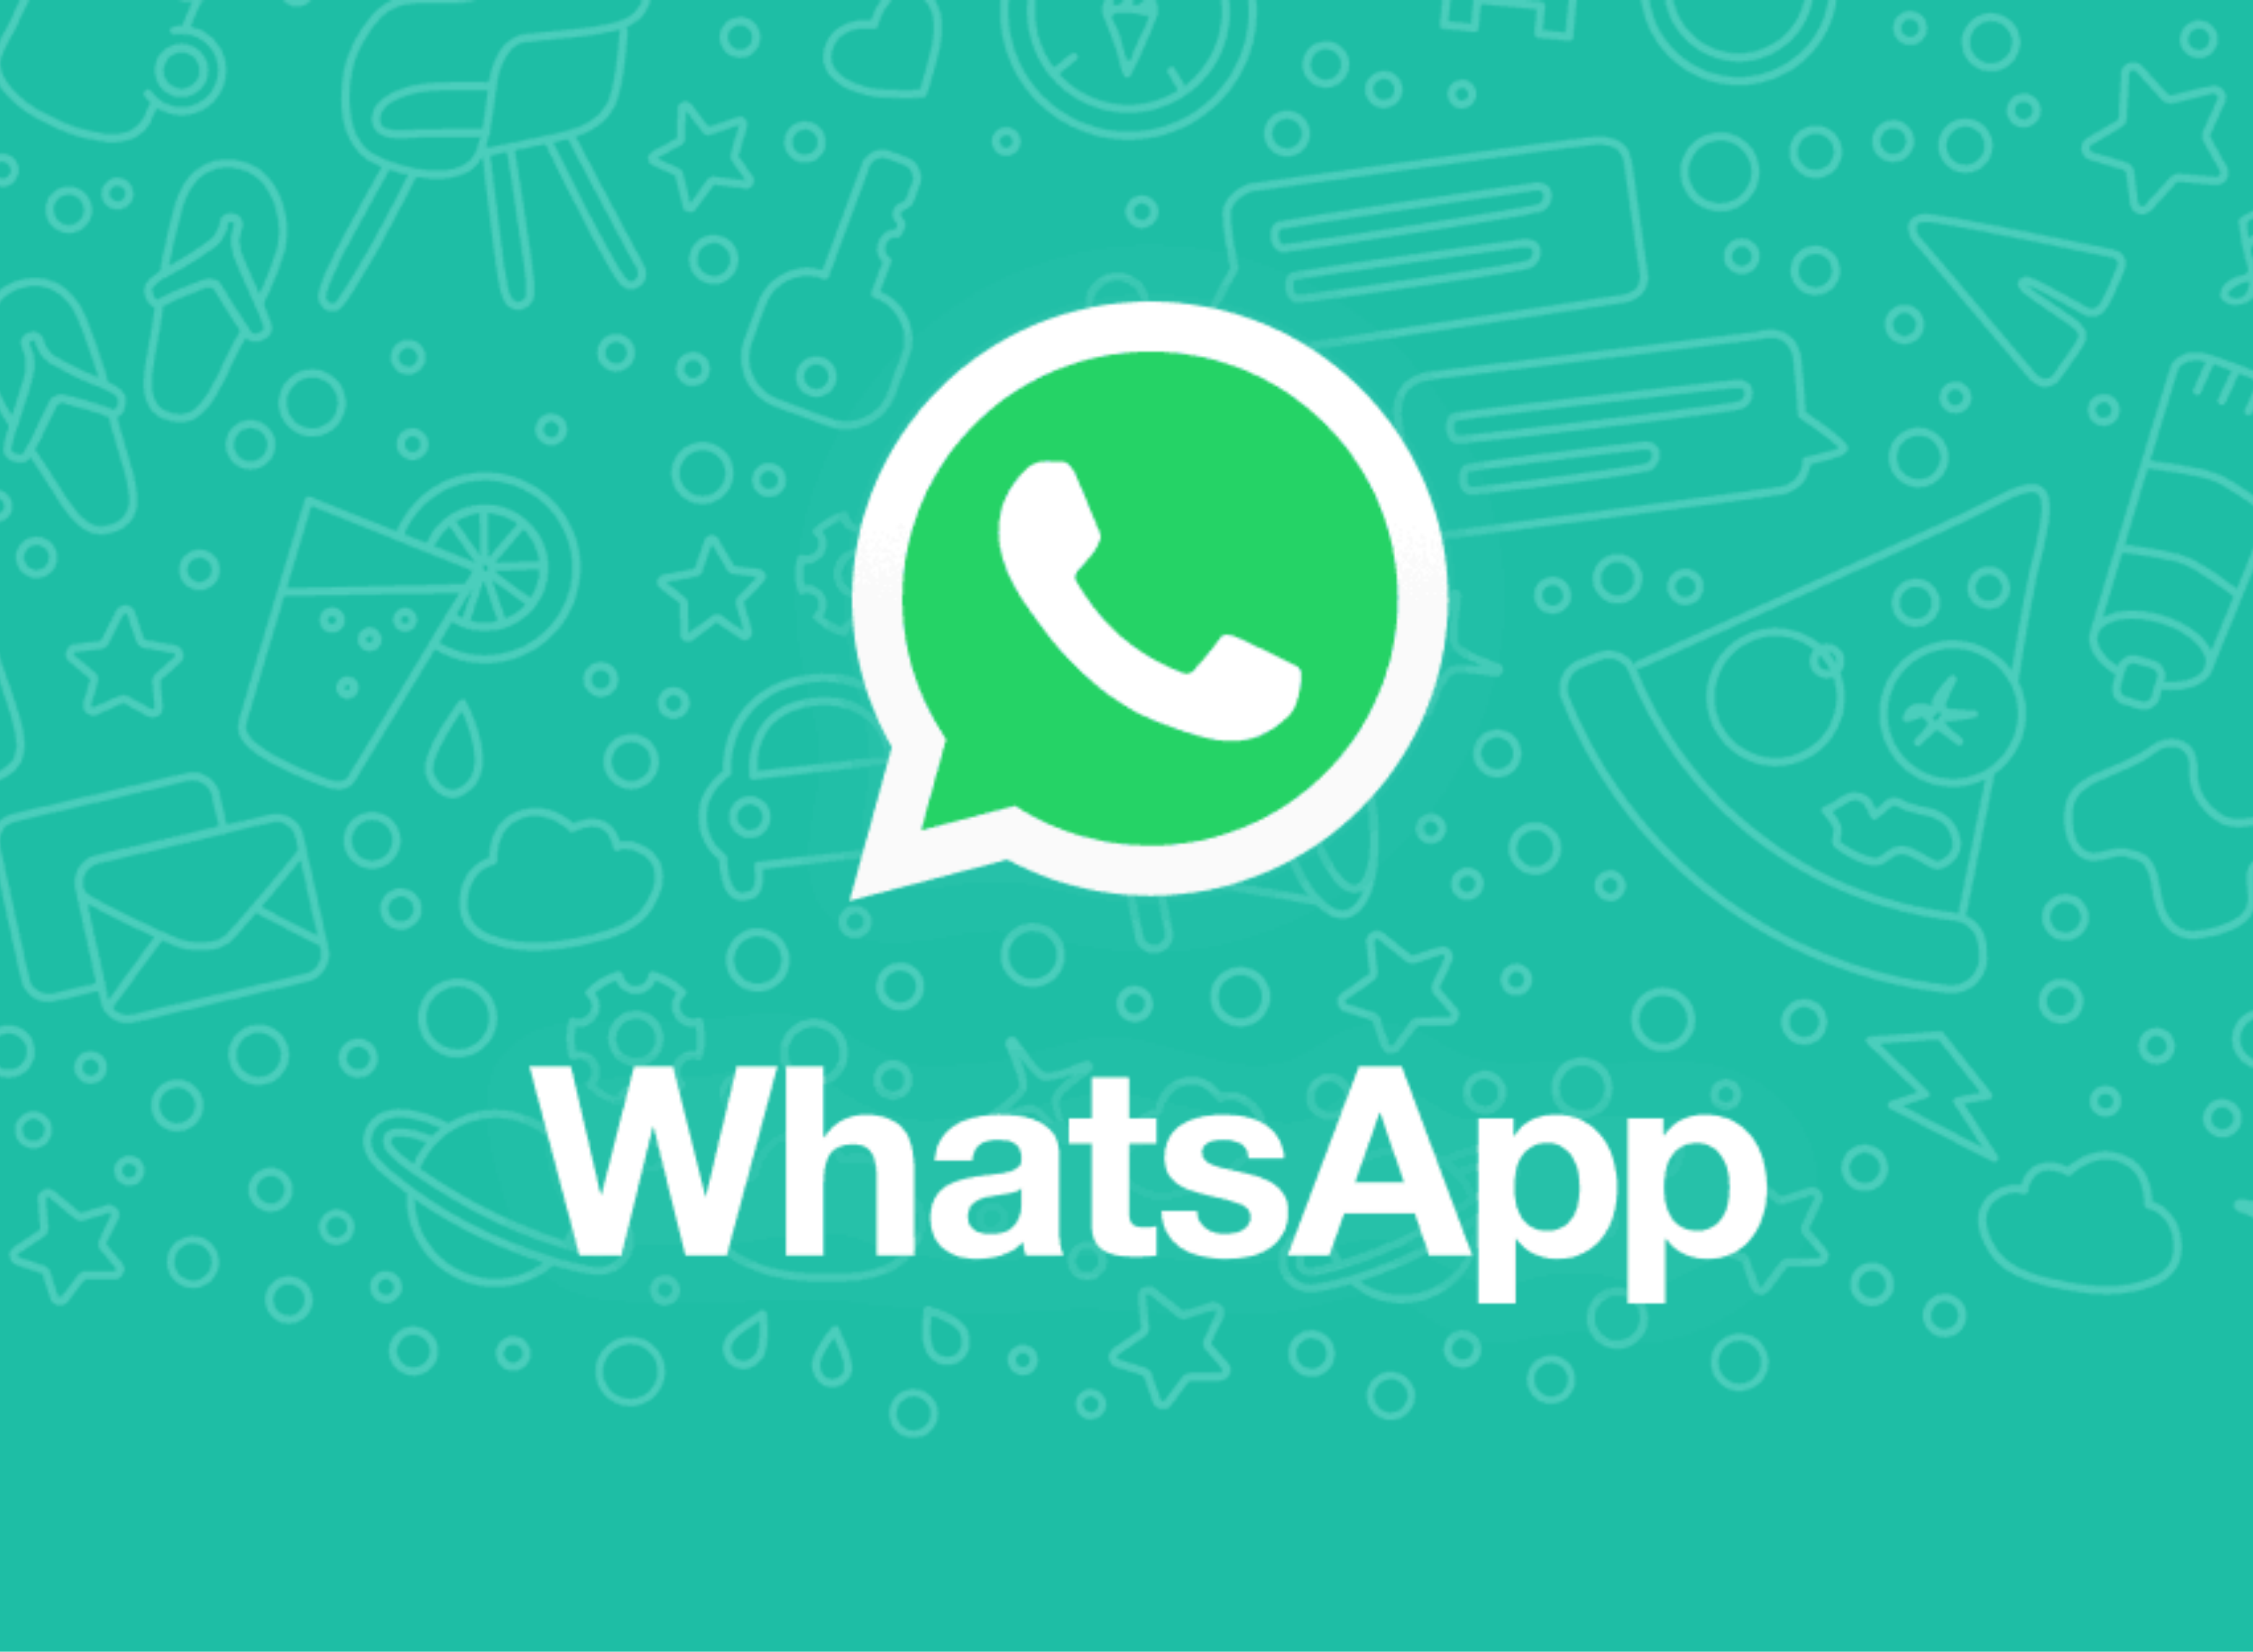 Das neue WhatsApp-Update bringt Werbung